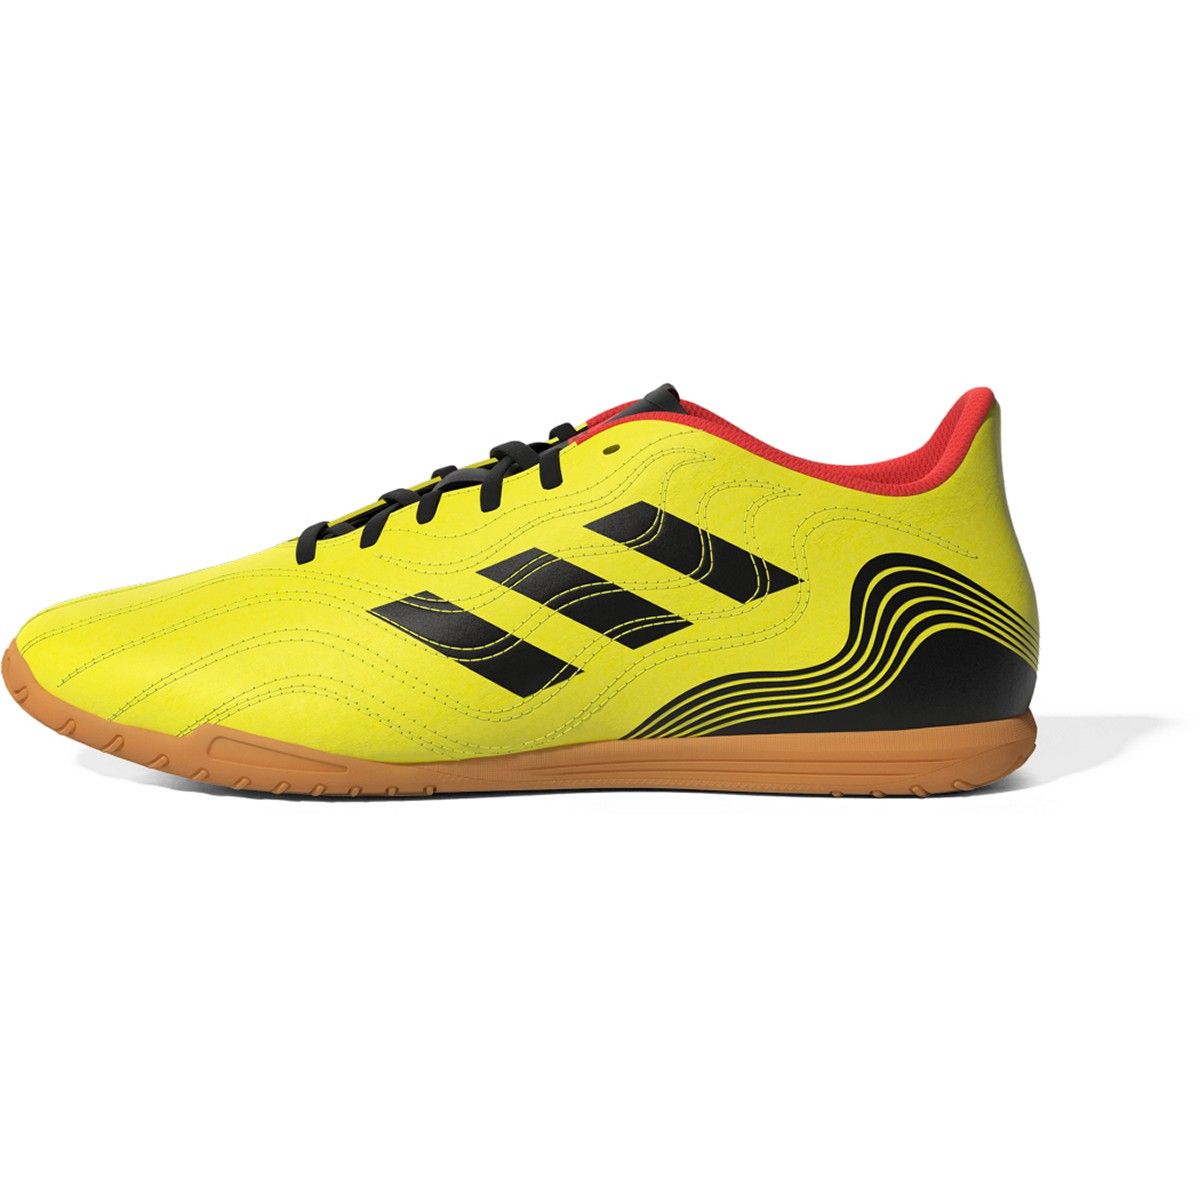 Copa Sense.4 Indoor Soccer Shoes in Yellow |